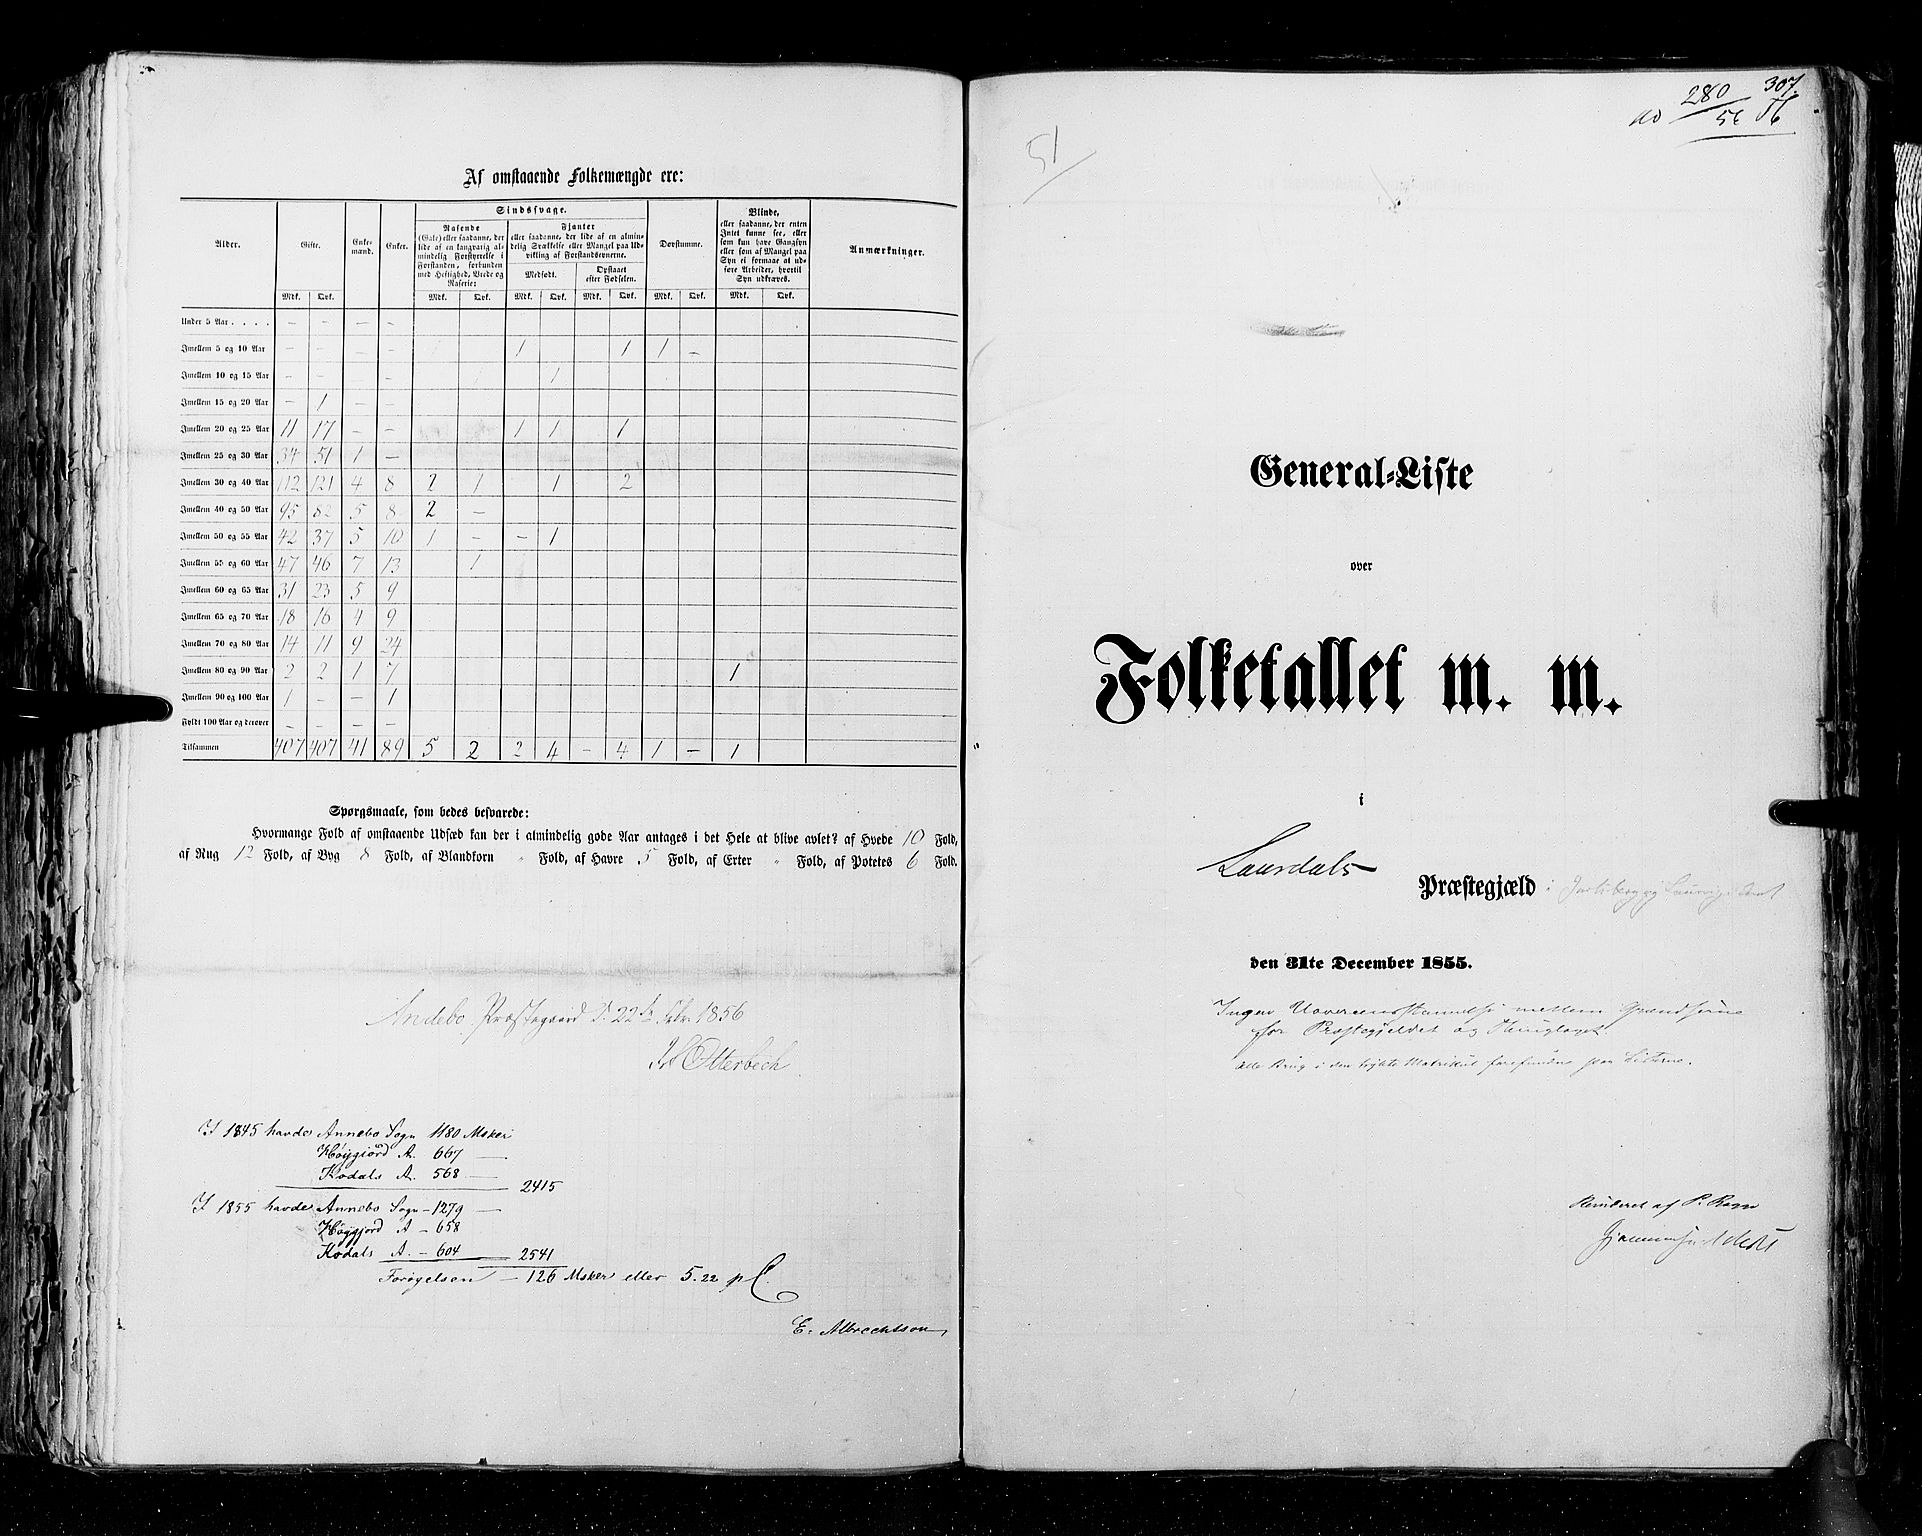 RA, Census 1855, vol. 2: Kristians amt, Buskerud amt og Jarlsberg og Larvik amt, 1855, p. 307